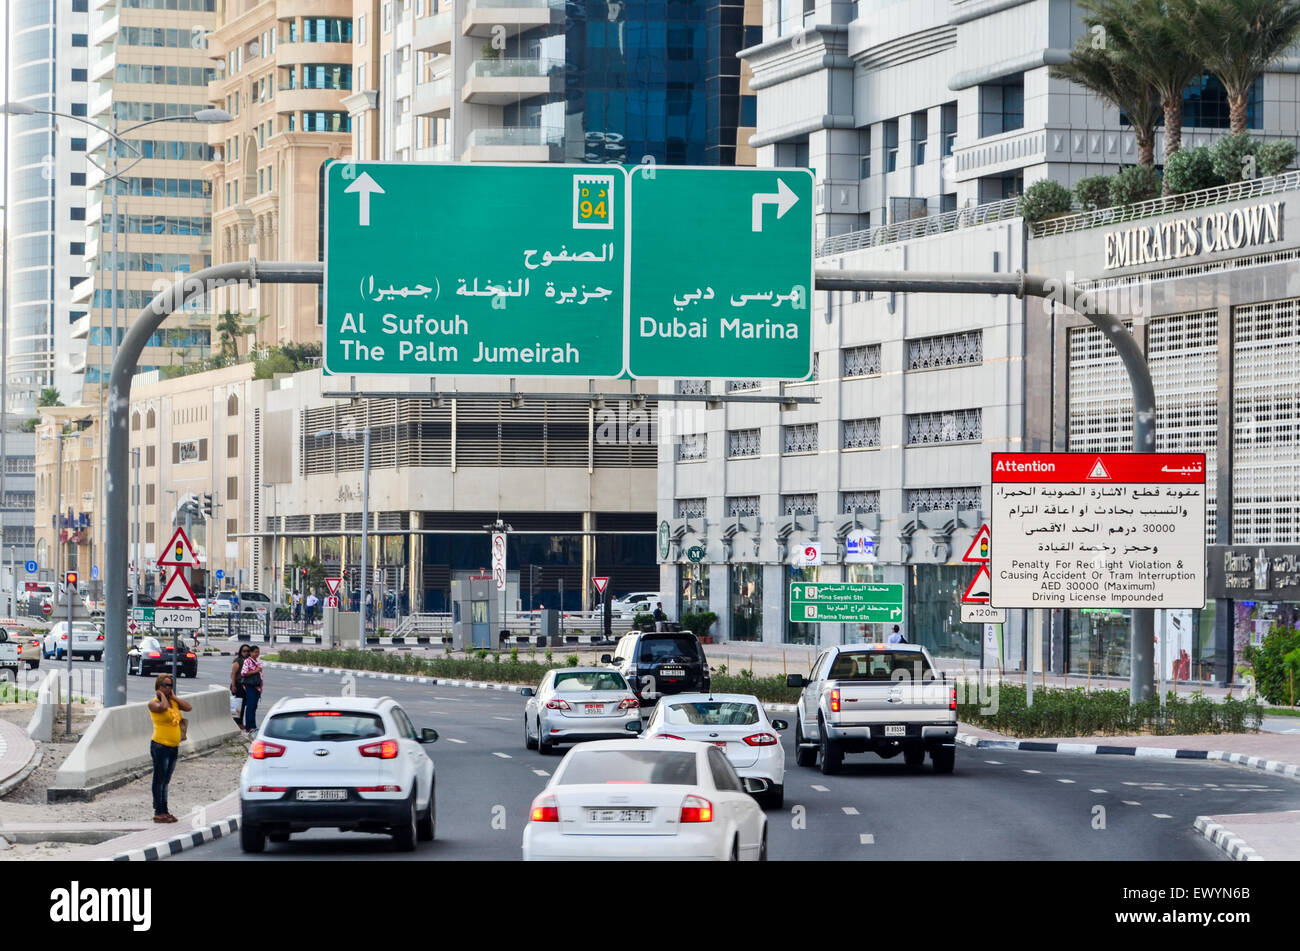 Roads of Dubai UAE, and signs for Al Sufouh, Dubai Marina, The Palm Jumeirah Stock Photo